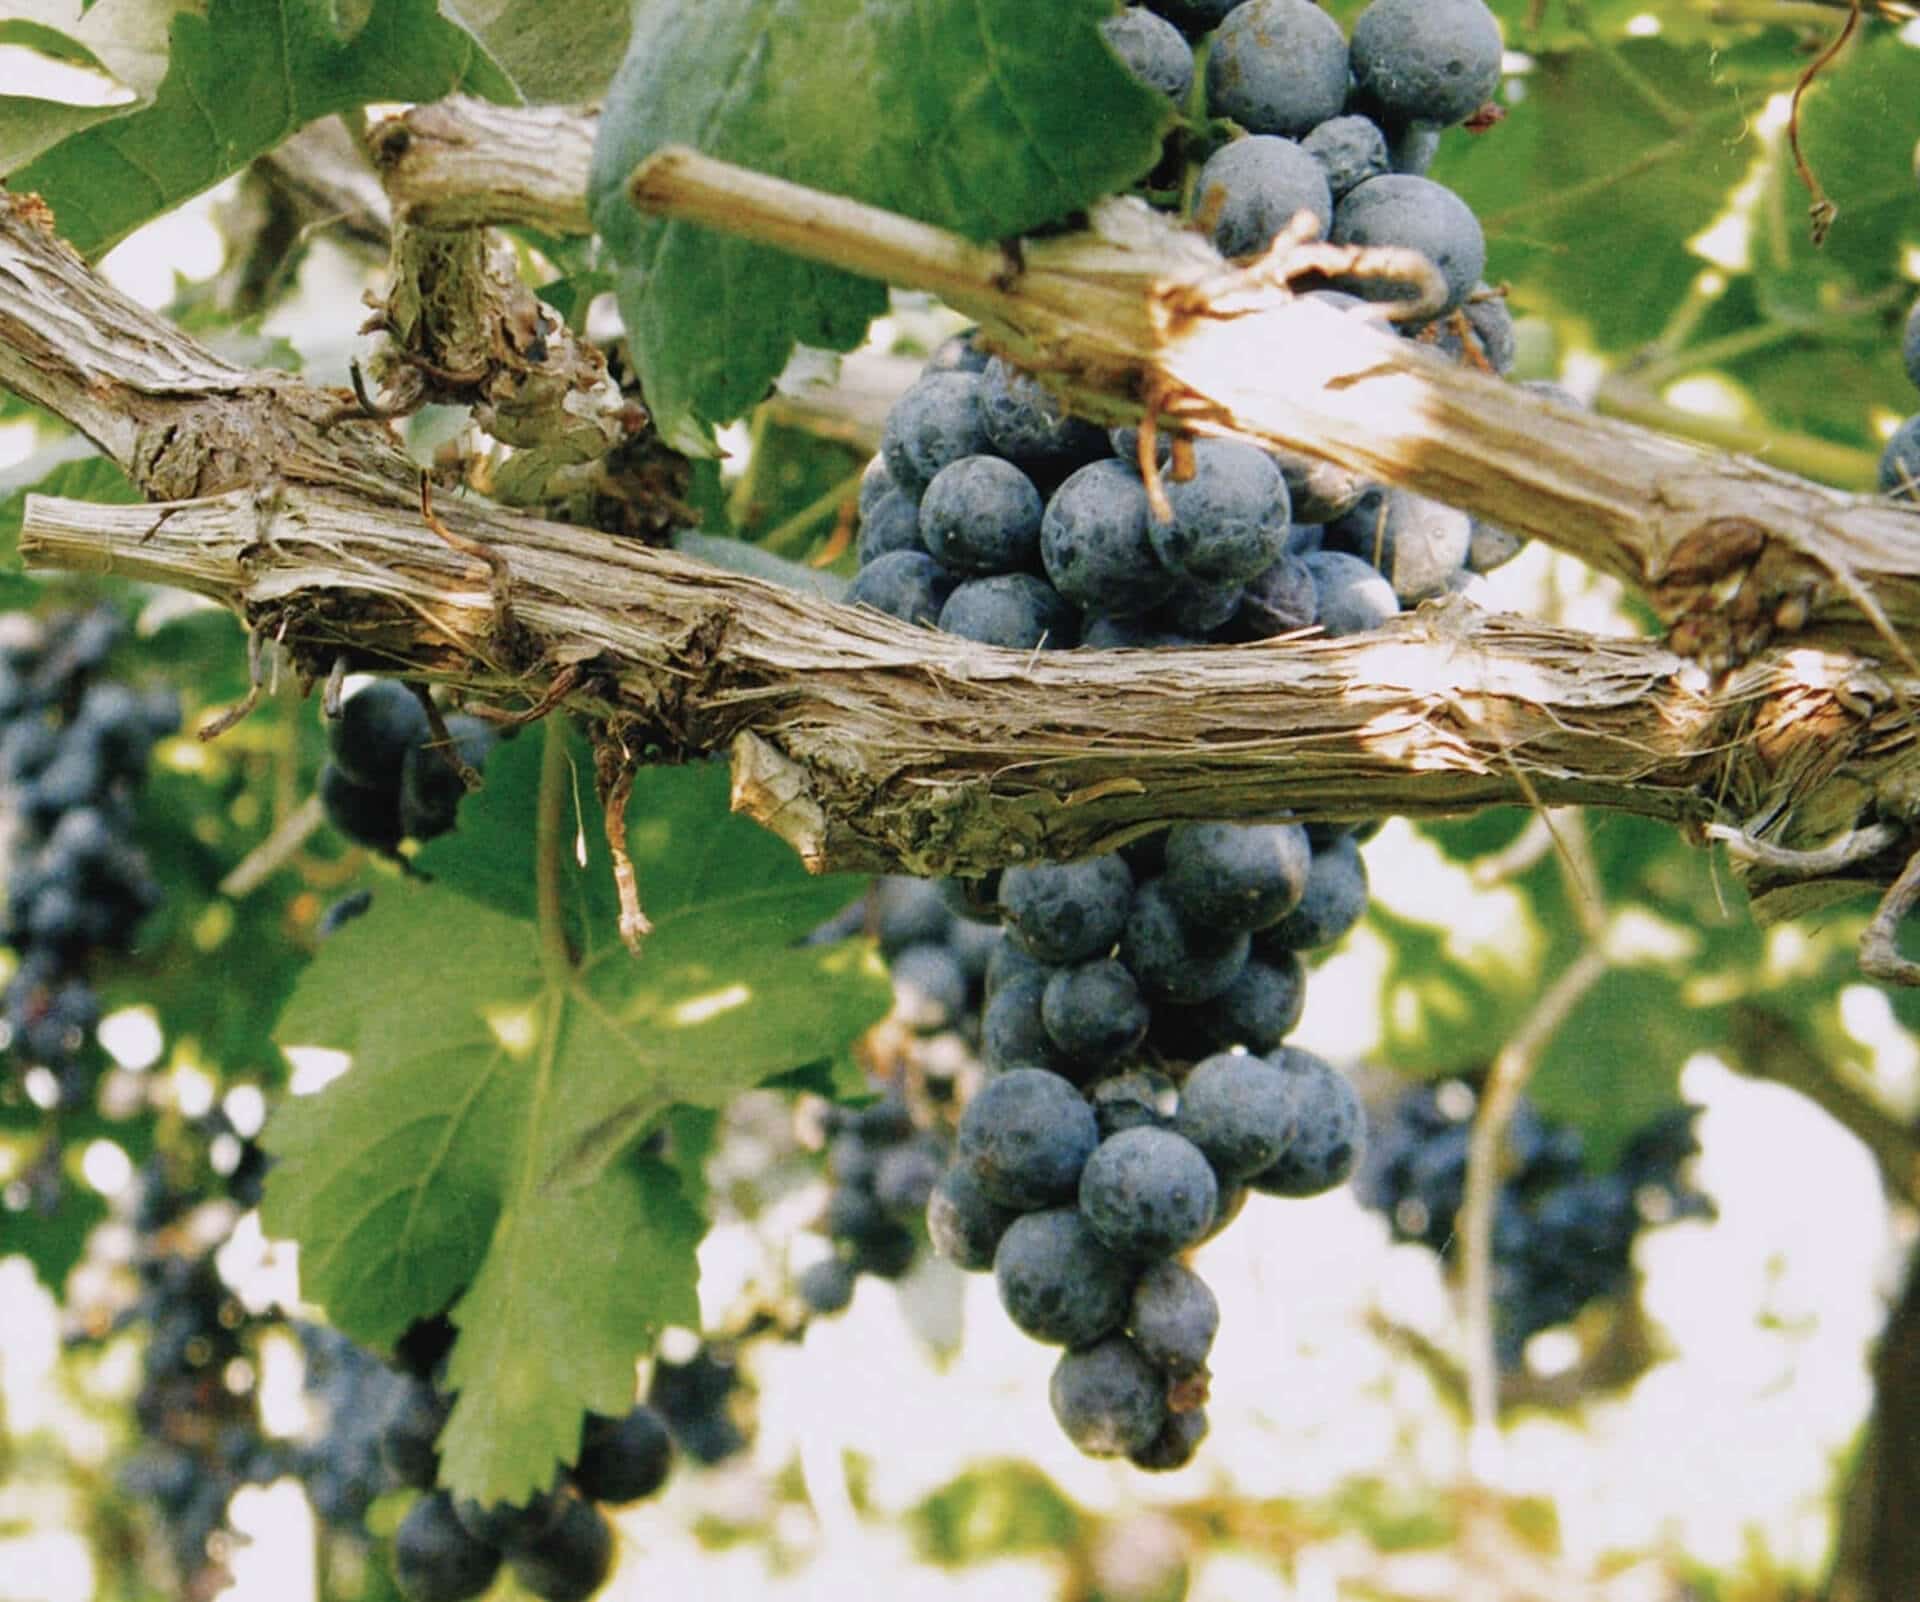 Vino per Passione, enoteca gespecialiseerd in Italiaanse wijnen